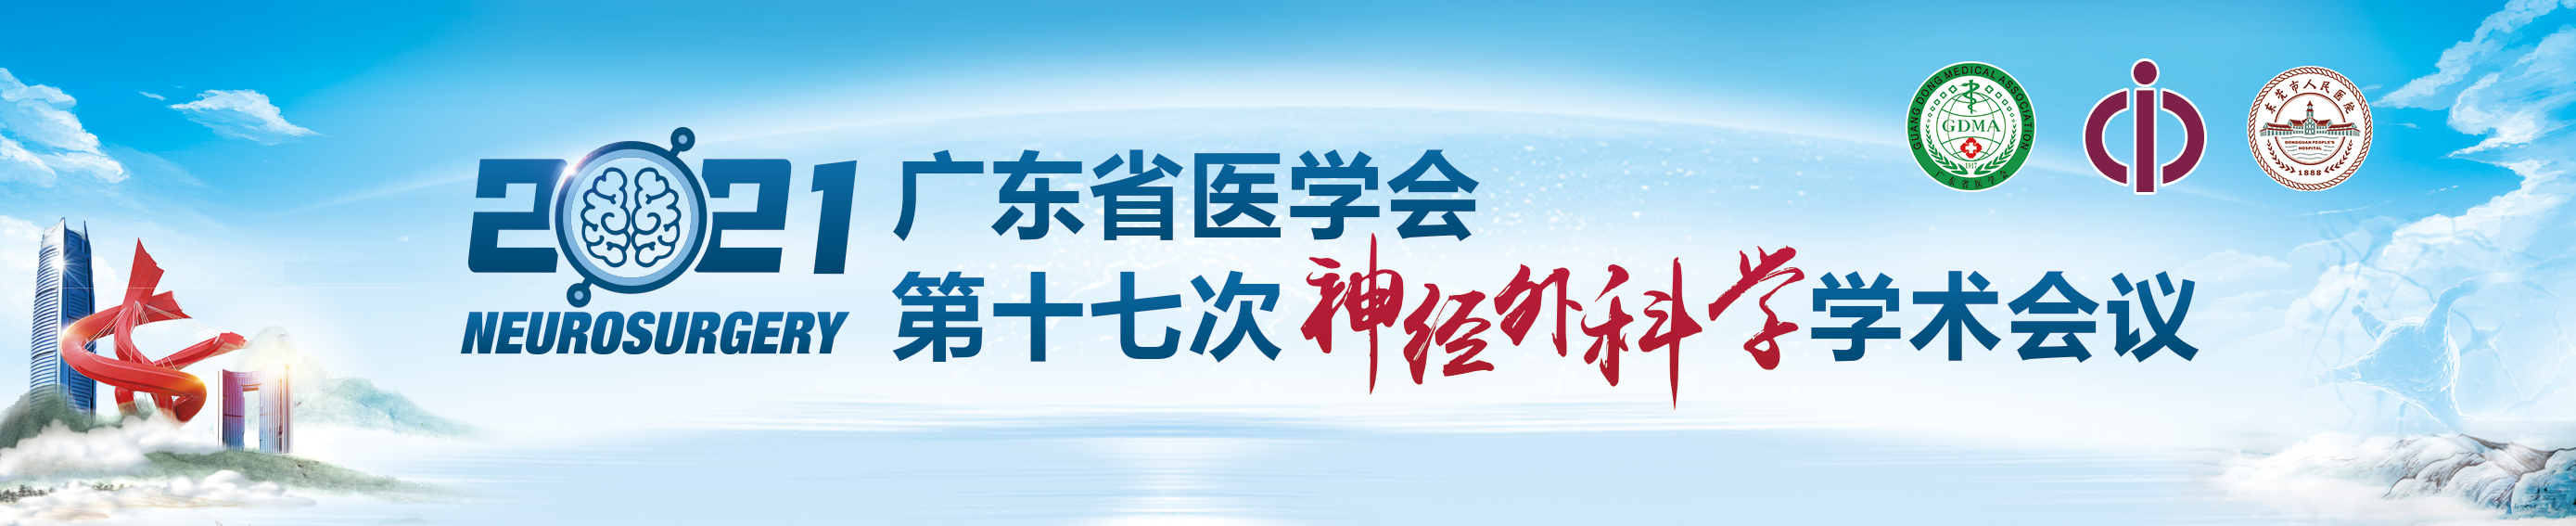 广东省医学会第十七次神经外科学学术会议